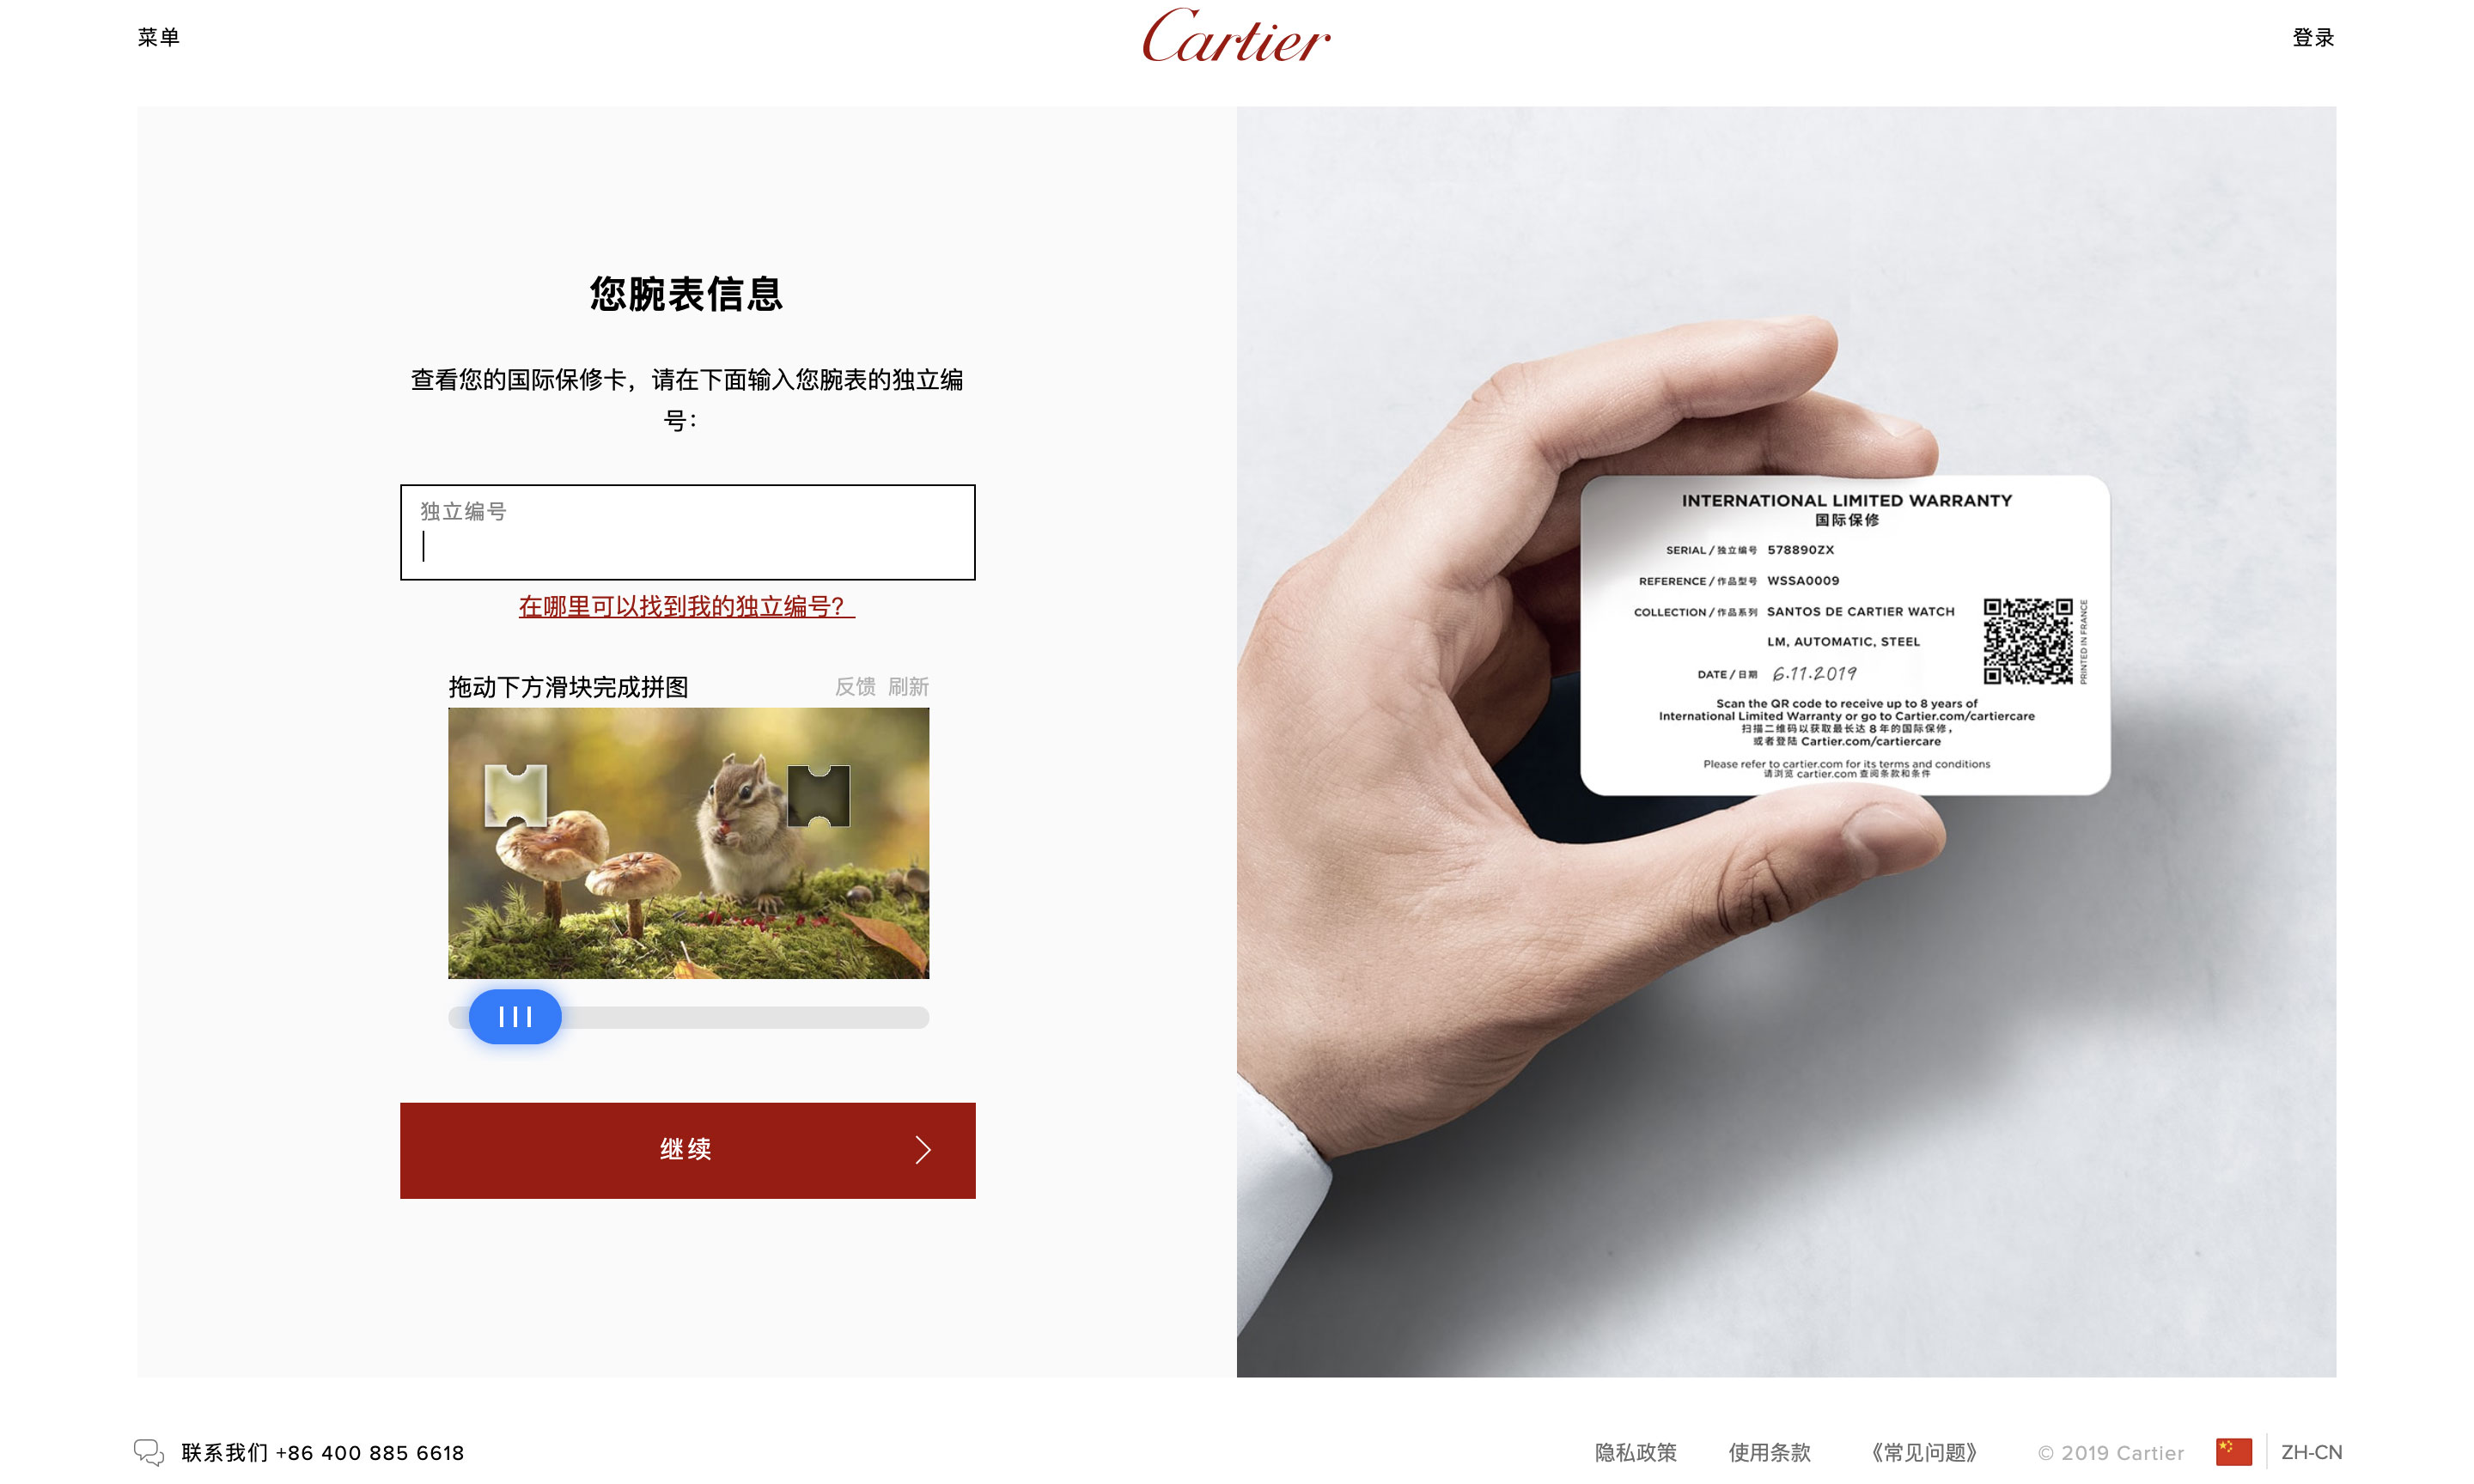 最长延保 8 年，卡地亚推出 Cartier Care 腕表服务